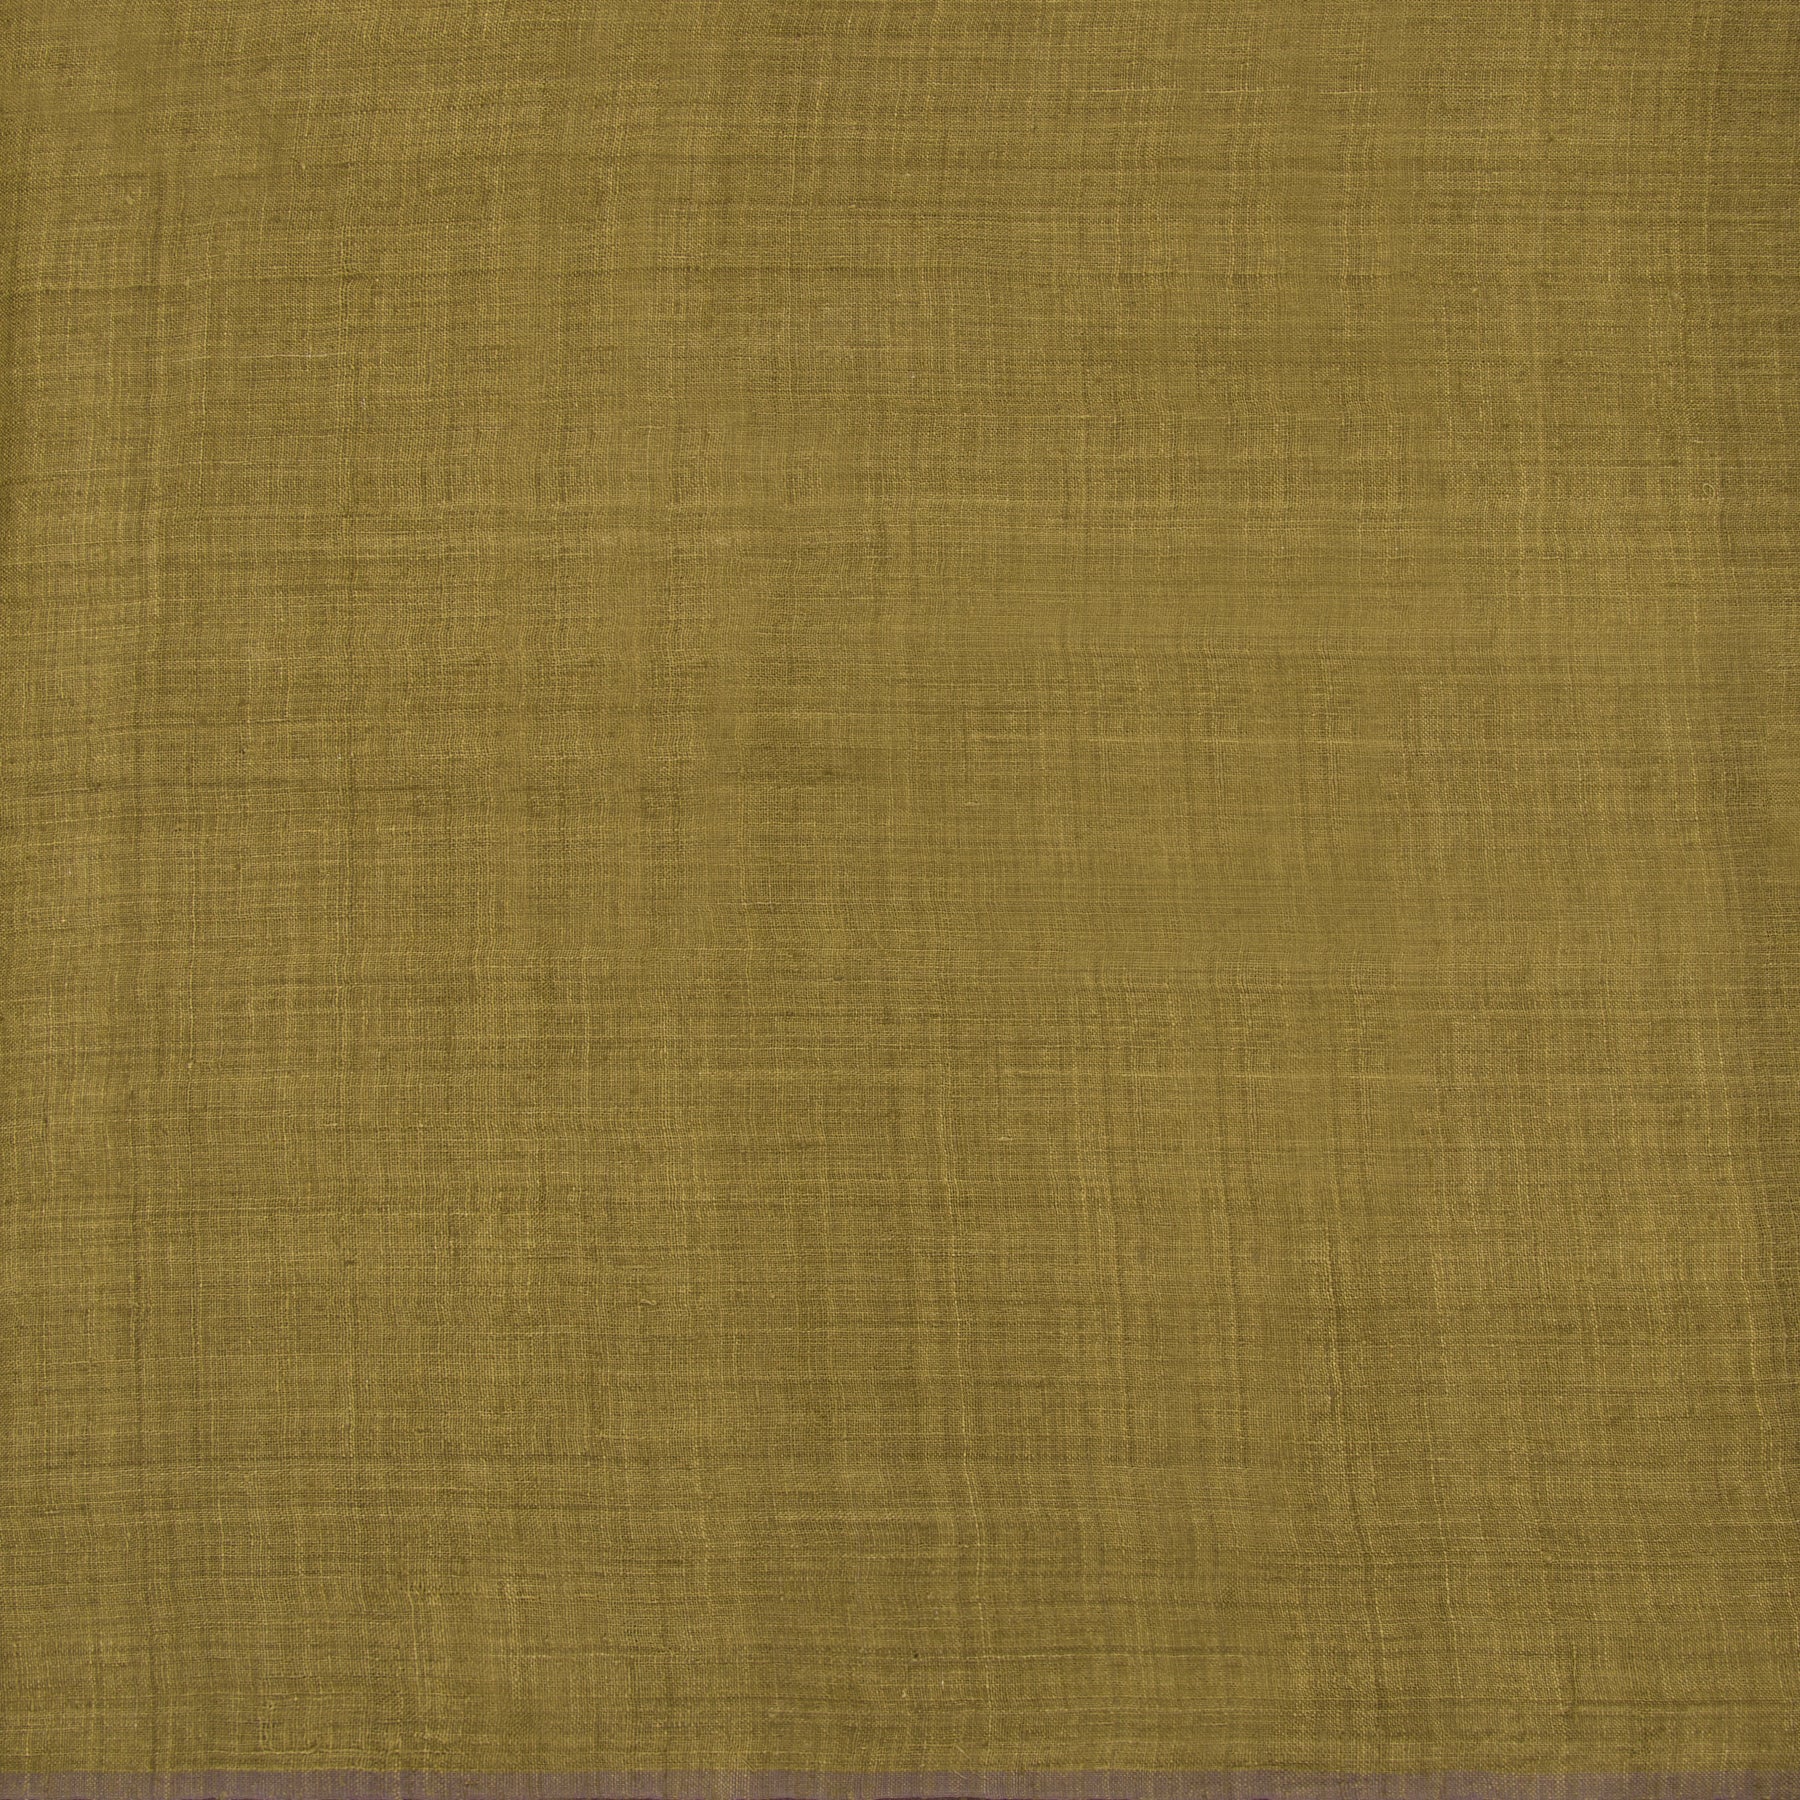 Kanakavalli Matka Silk Blouse Length 22-140-HB002-14383 - Full View